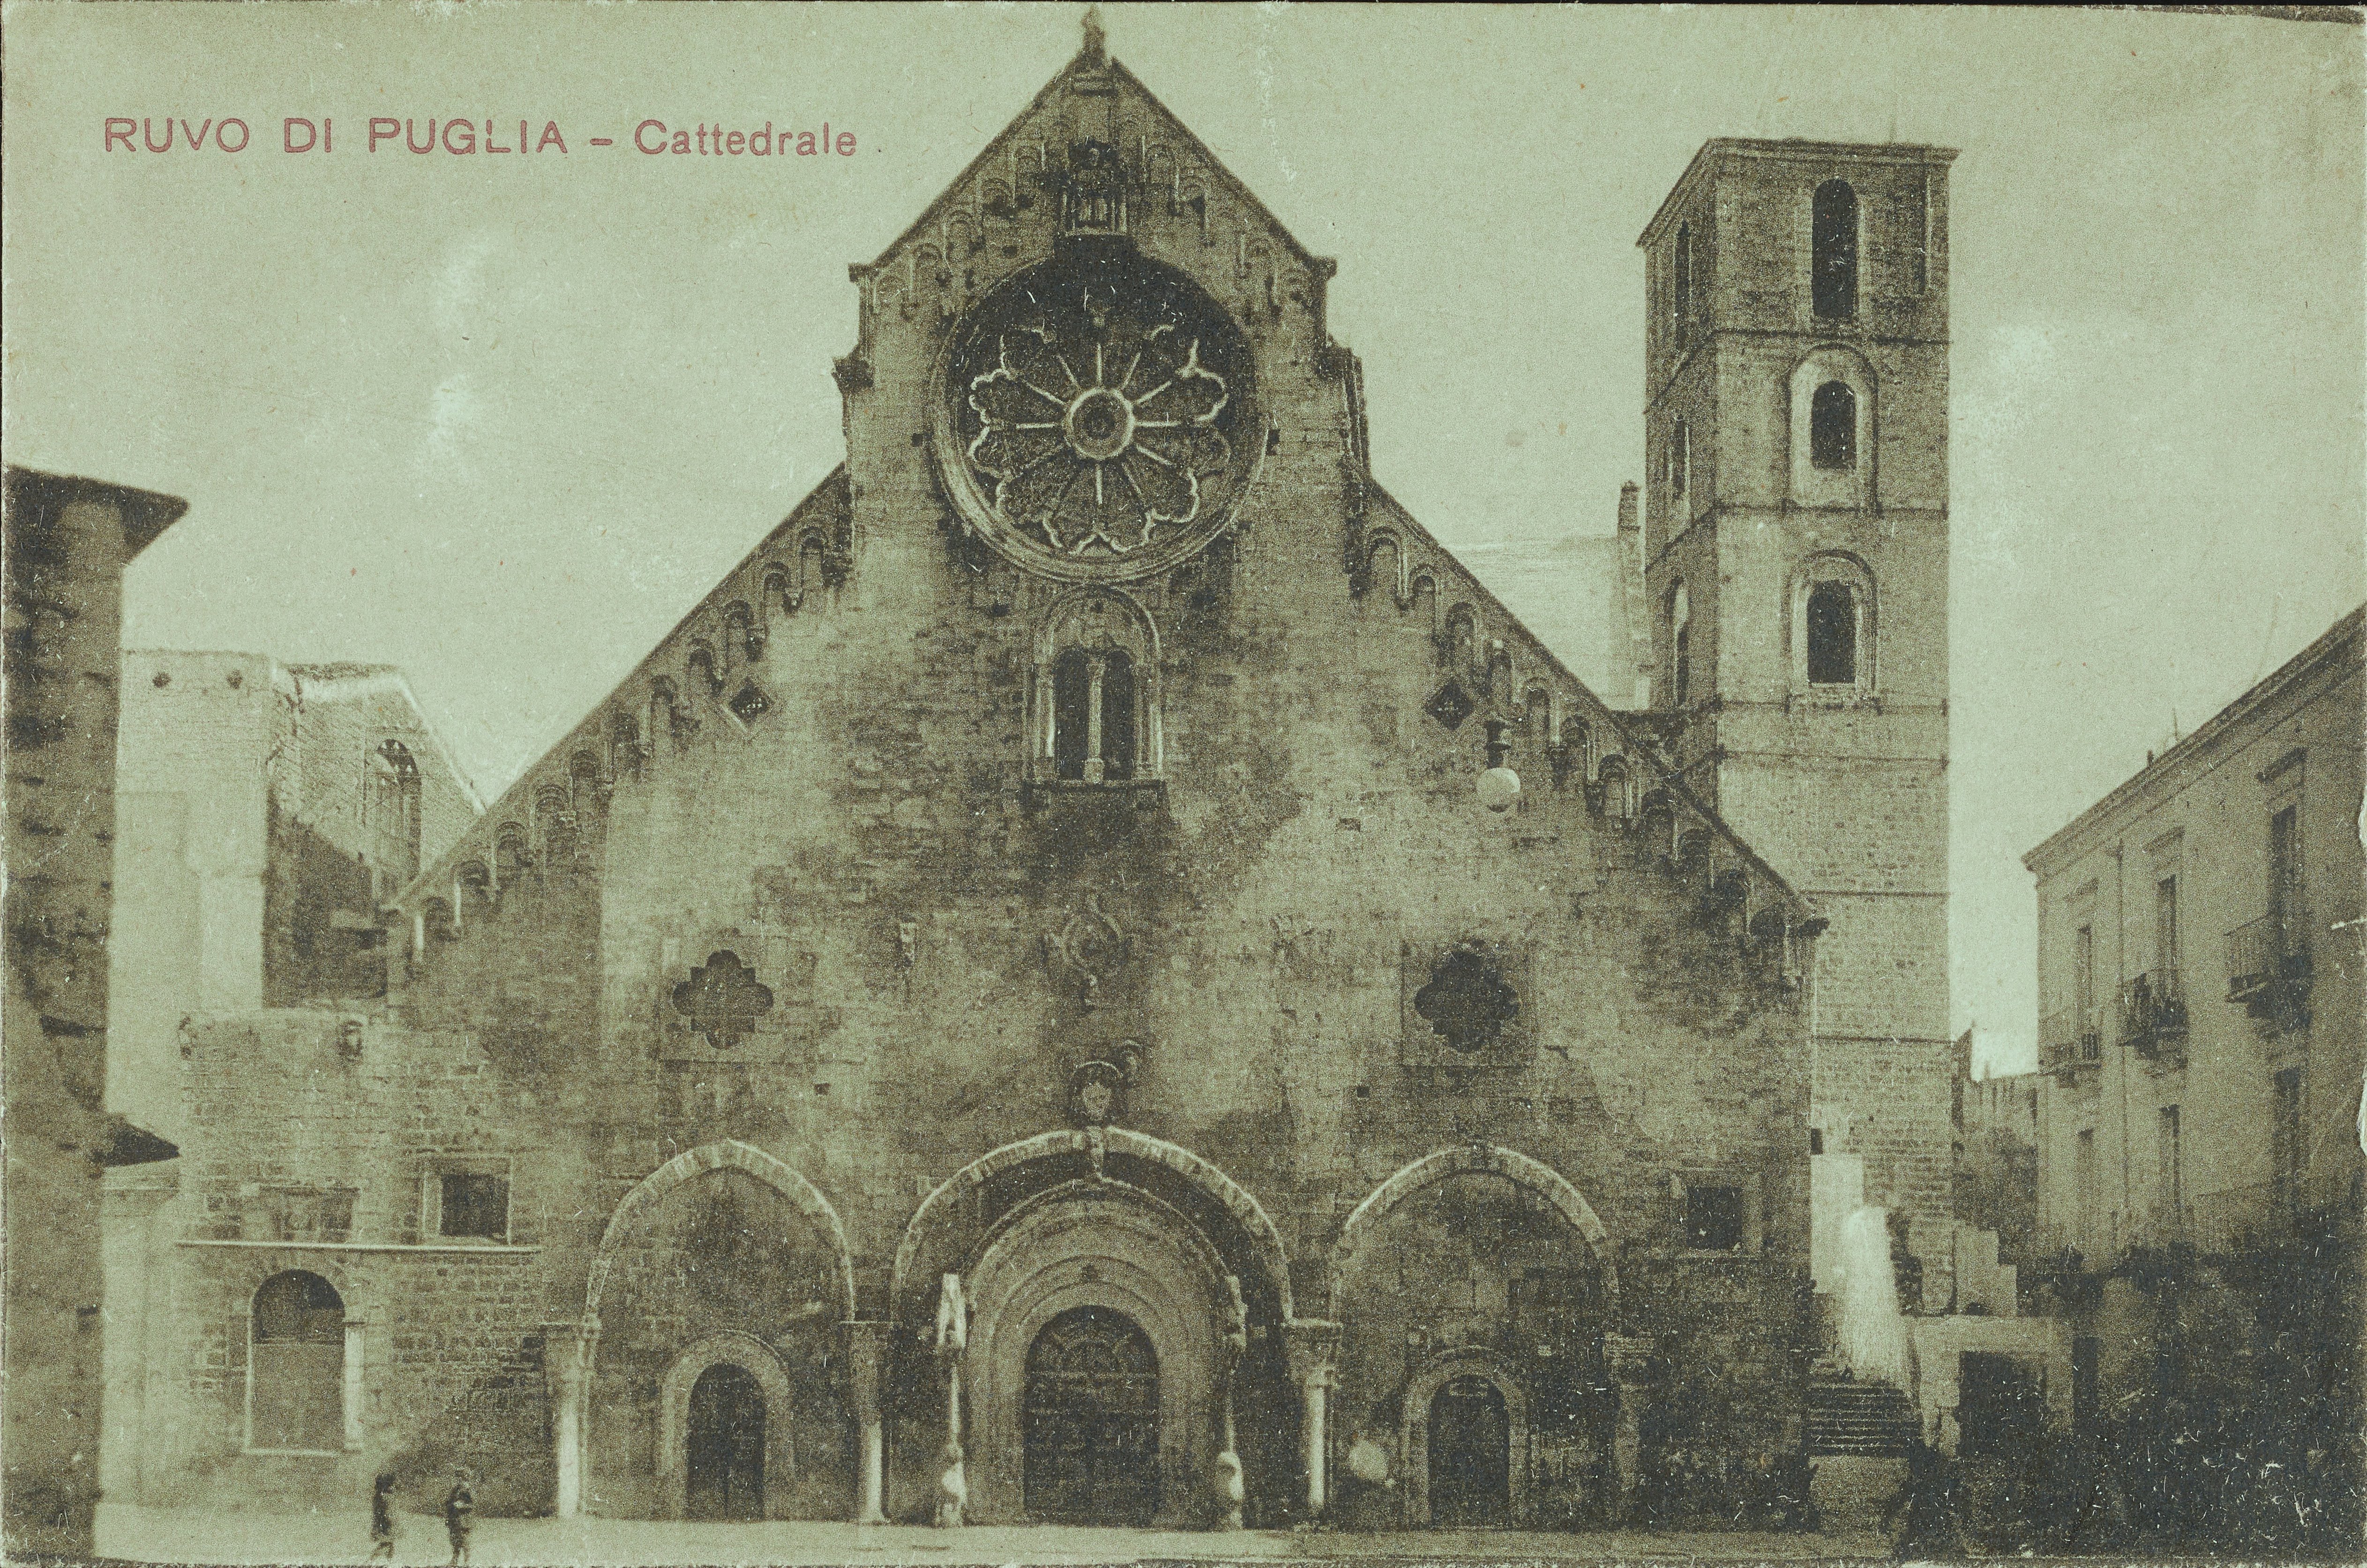 Fotografo non identificato, Ruvo di Puglia - Cattedrale S. Maria Assunta, 1901-1925, collotipia, MPI6091645